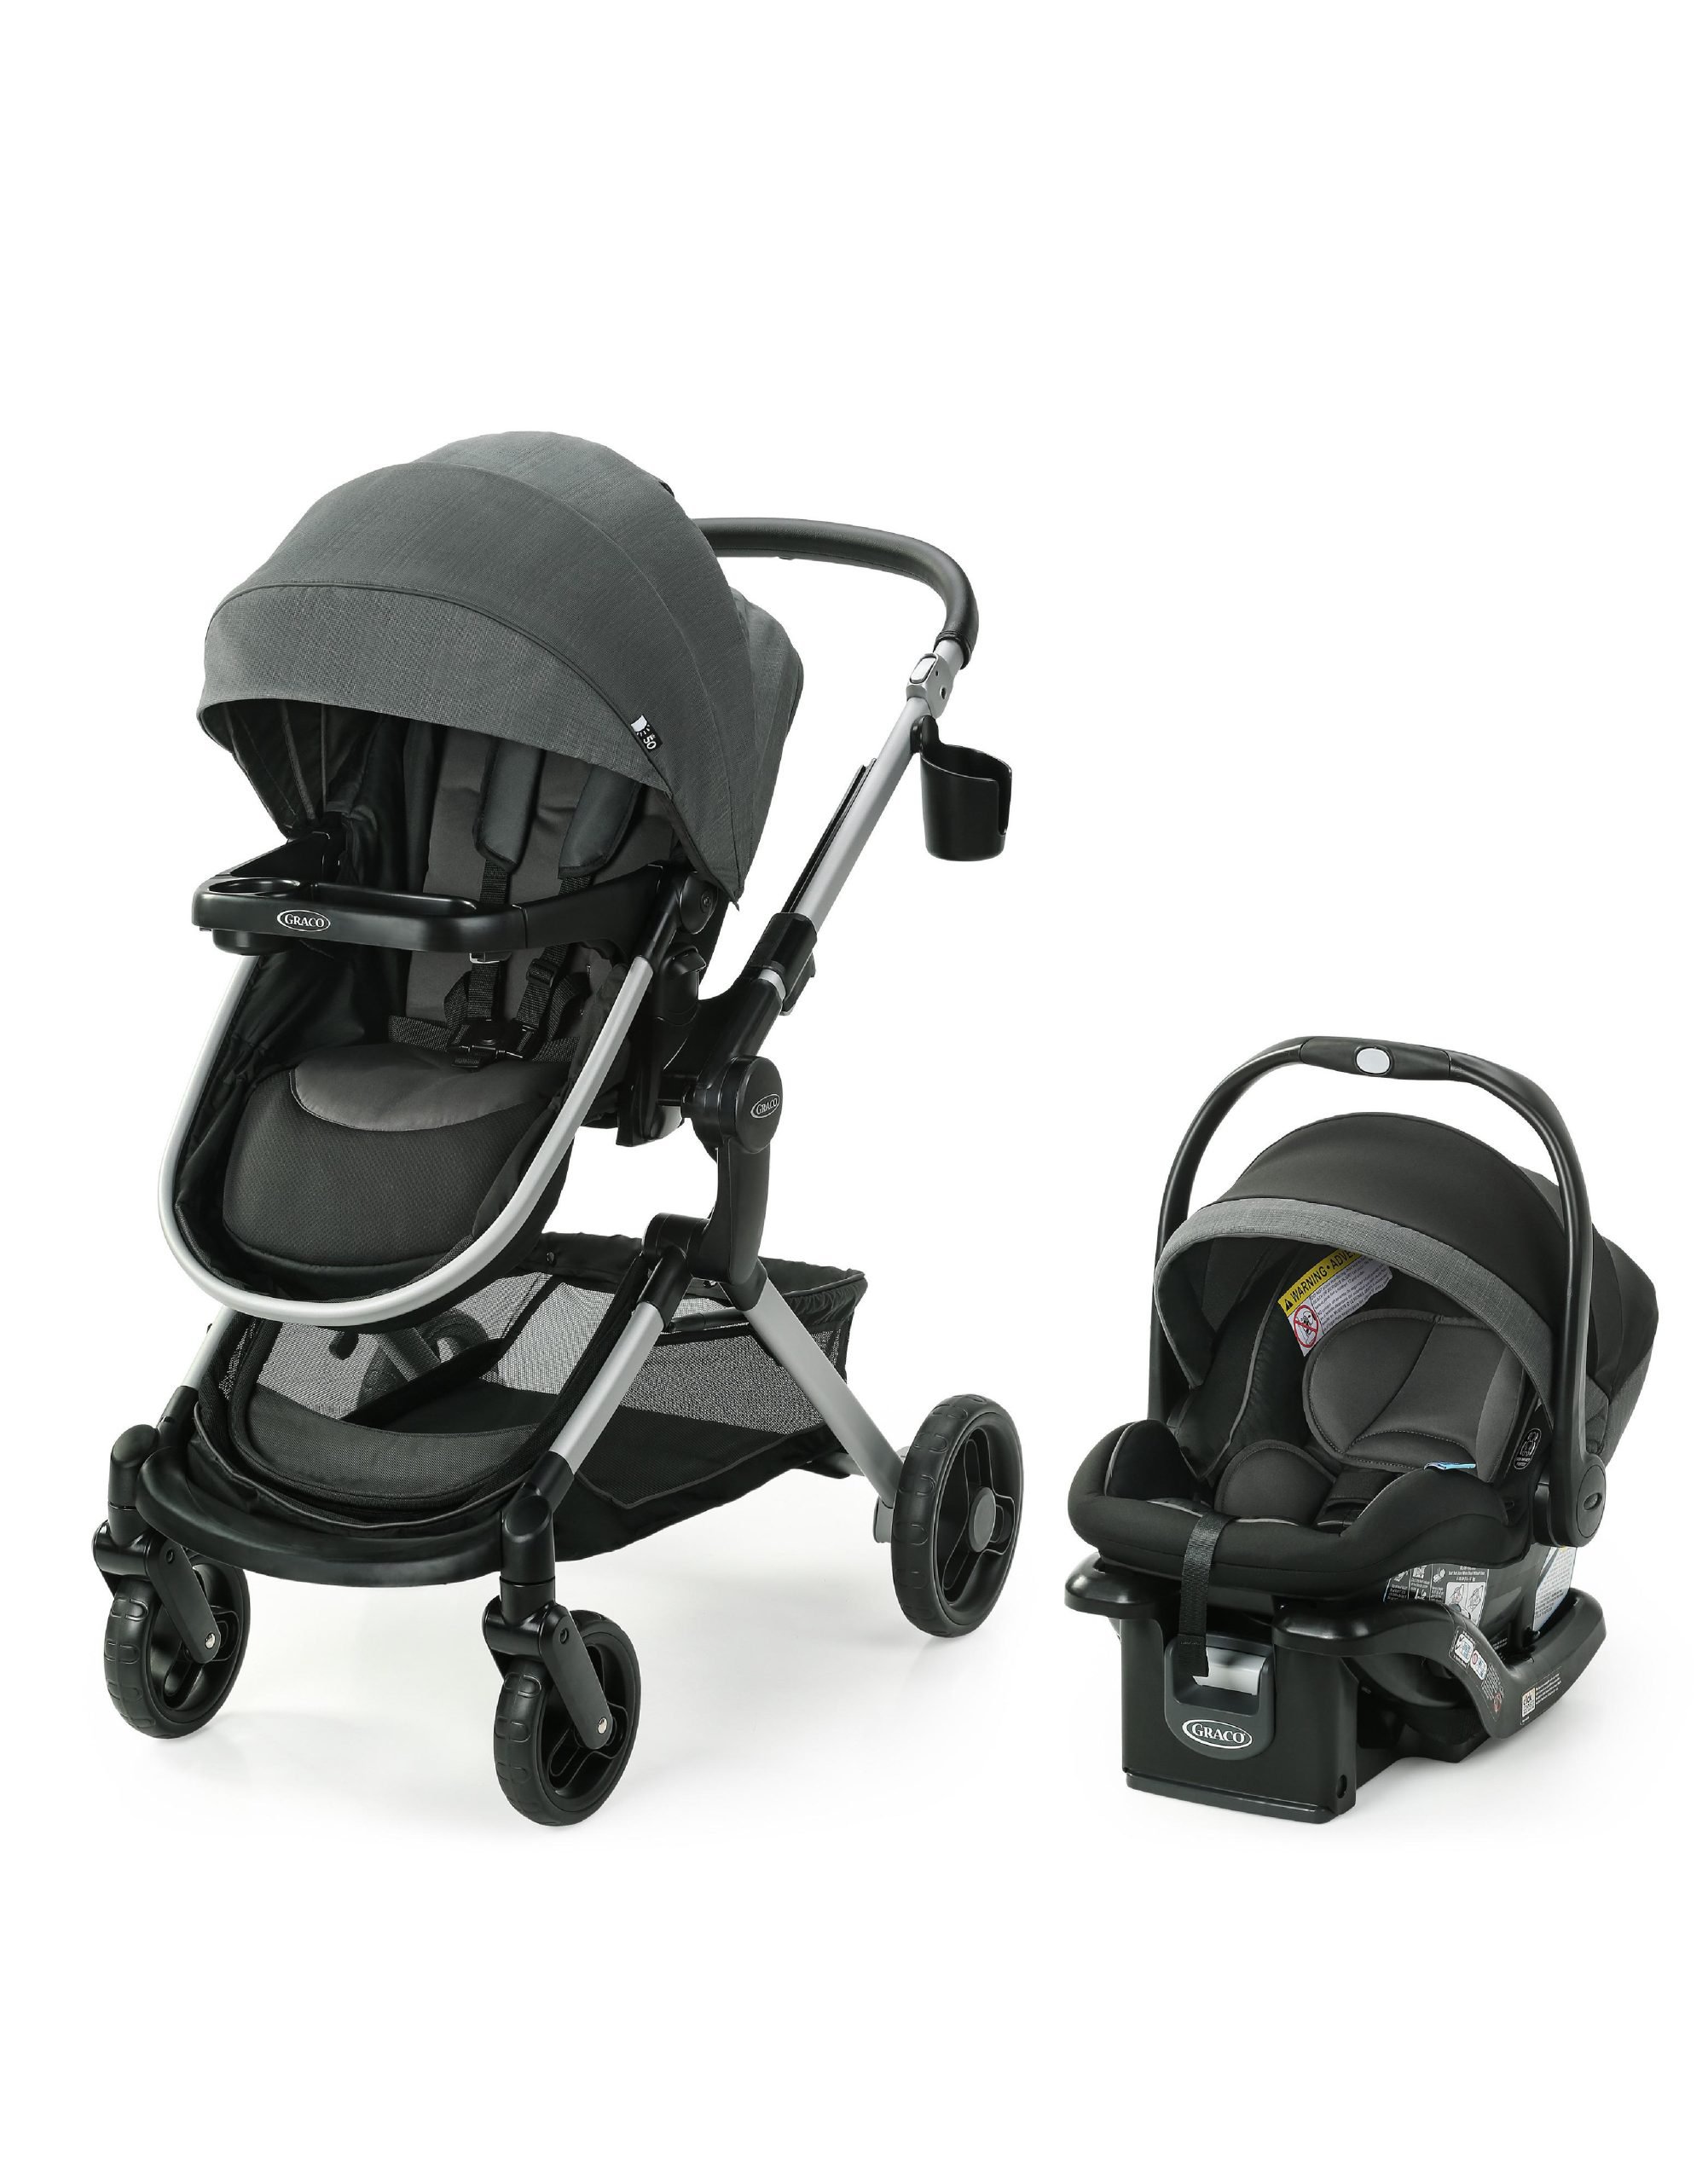 BABYLON silla coche grupo 2-3 Smart silla bebe coche baby, silla de bebe  para coche Niños 15-36 kg (3 a 12 años). silla coche sin isofix fabricada  en